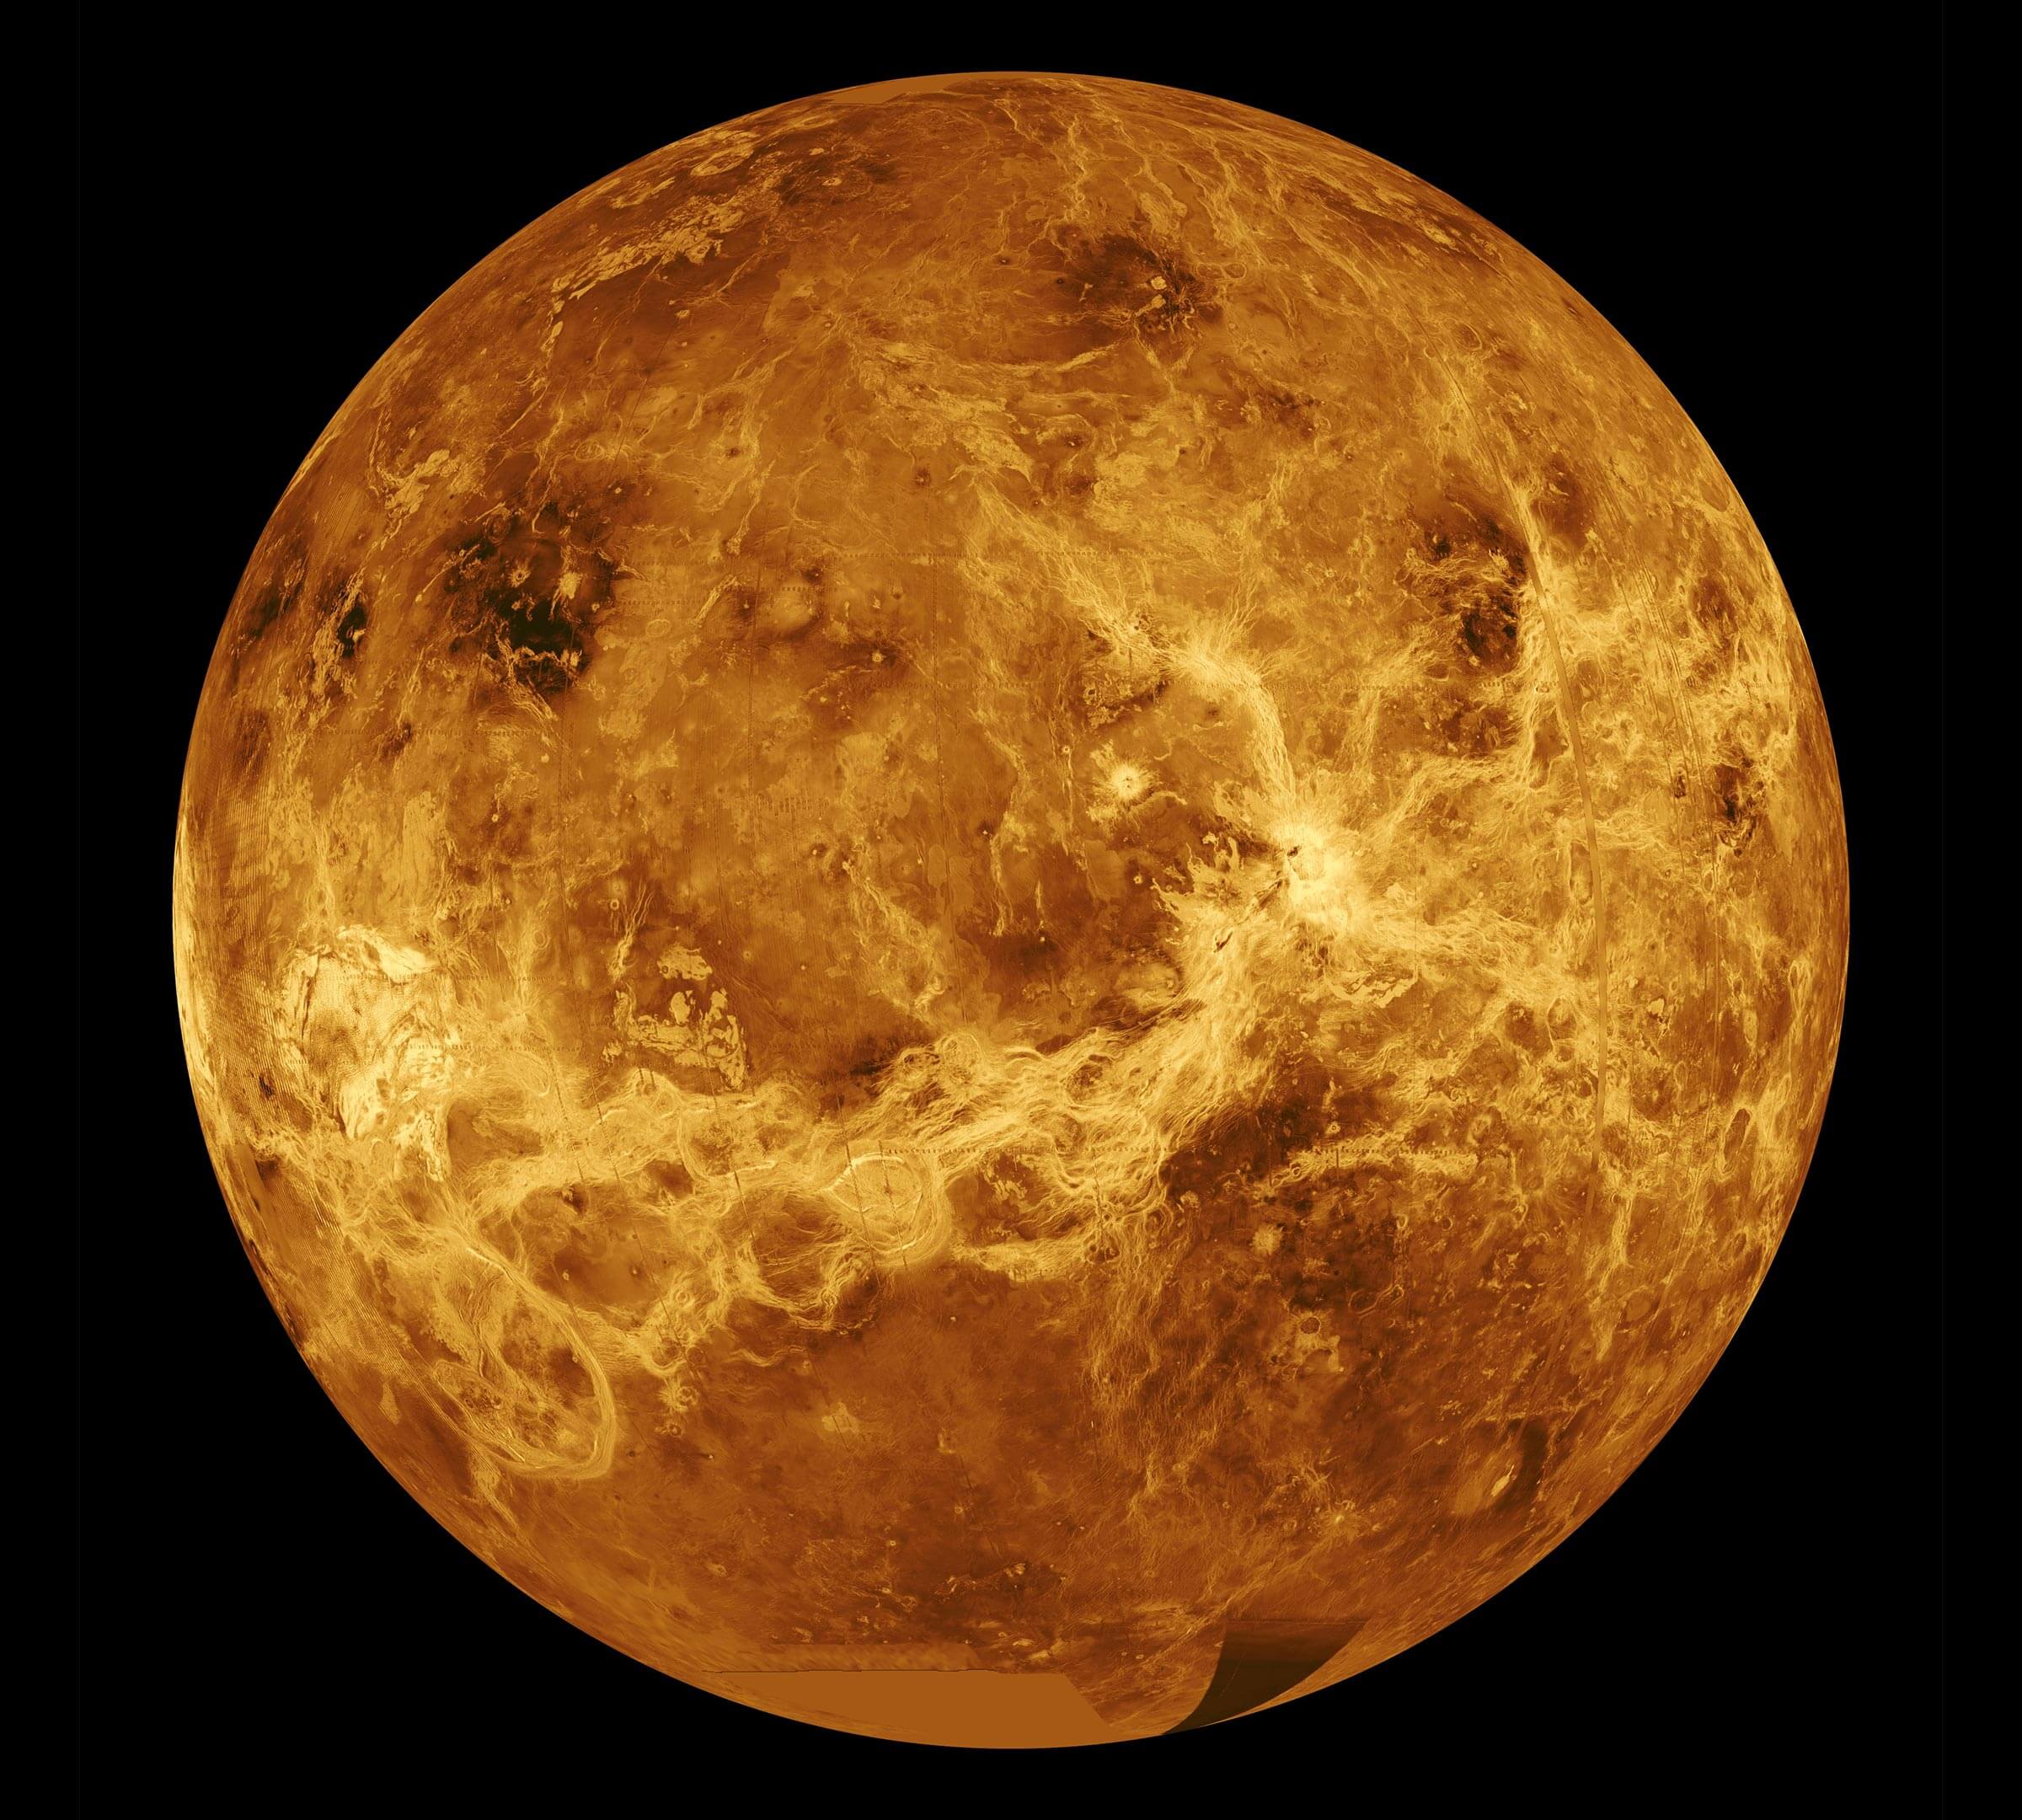 Image name: Venus-Global-View-Magellan-Mapping.jpg